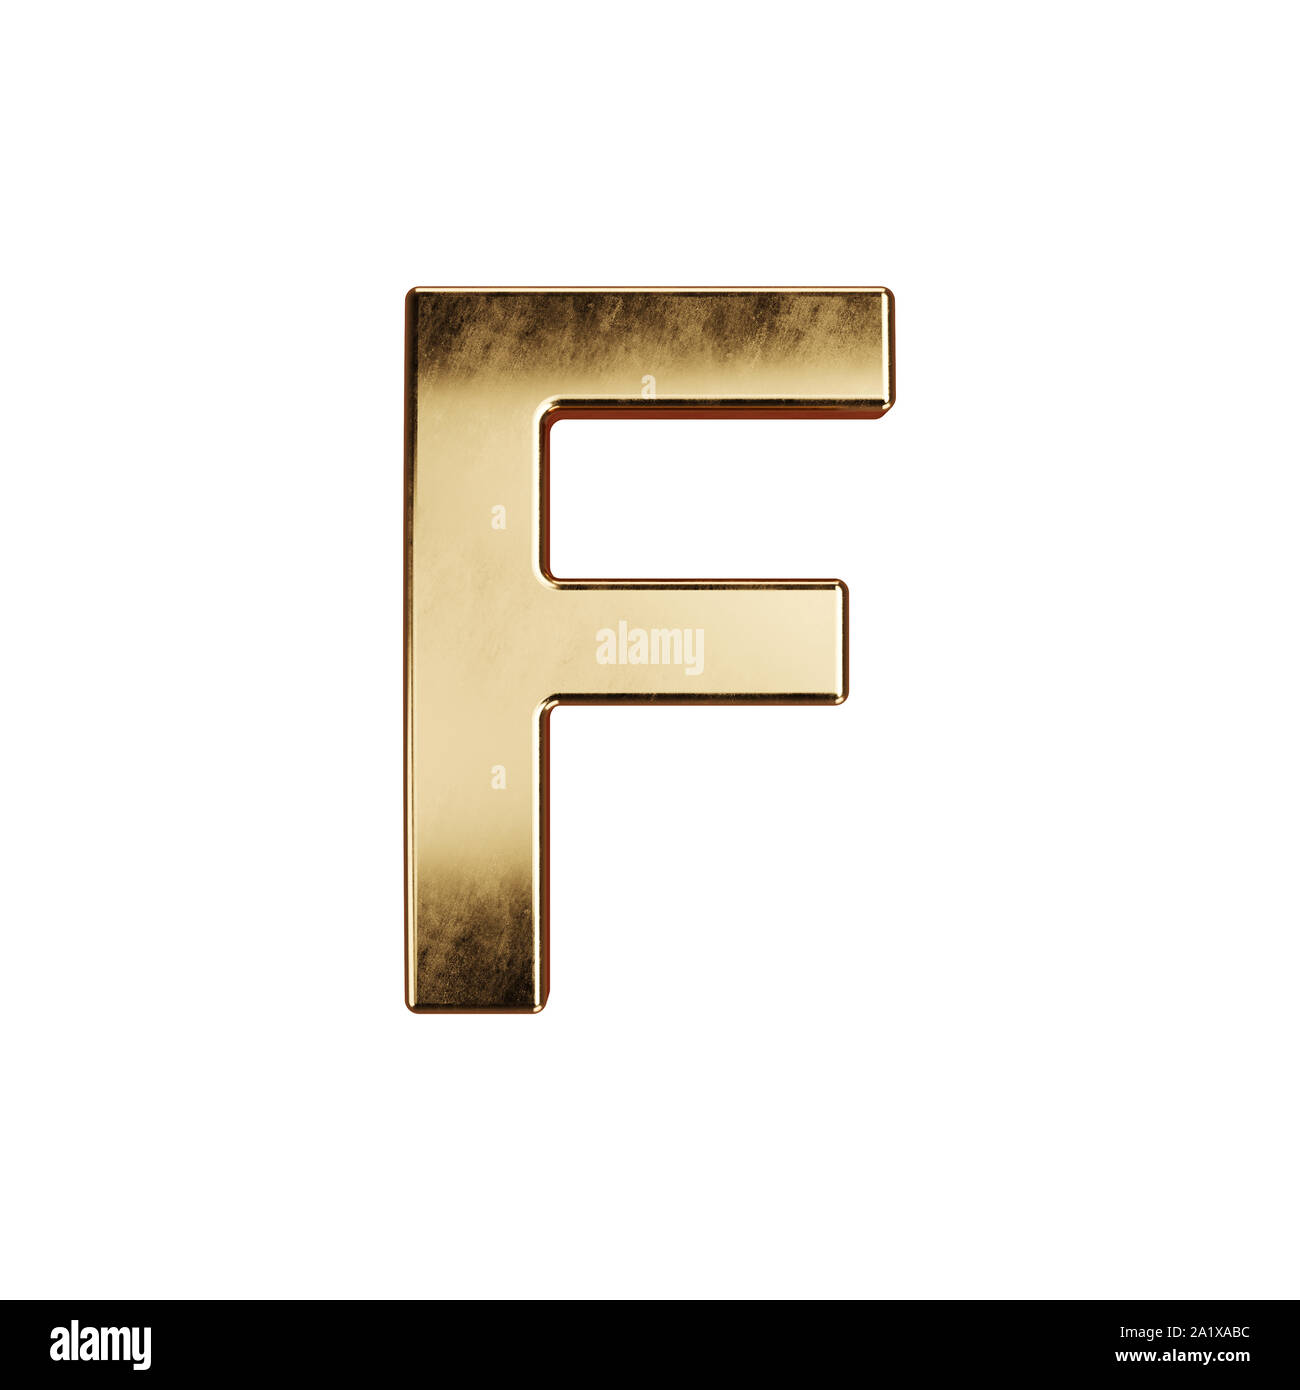 3d render of golden alphabet letter simbol - F. Isolated on white background Stock Photo